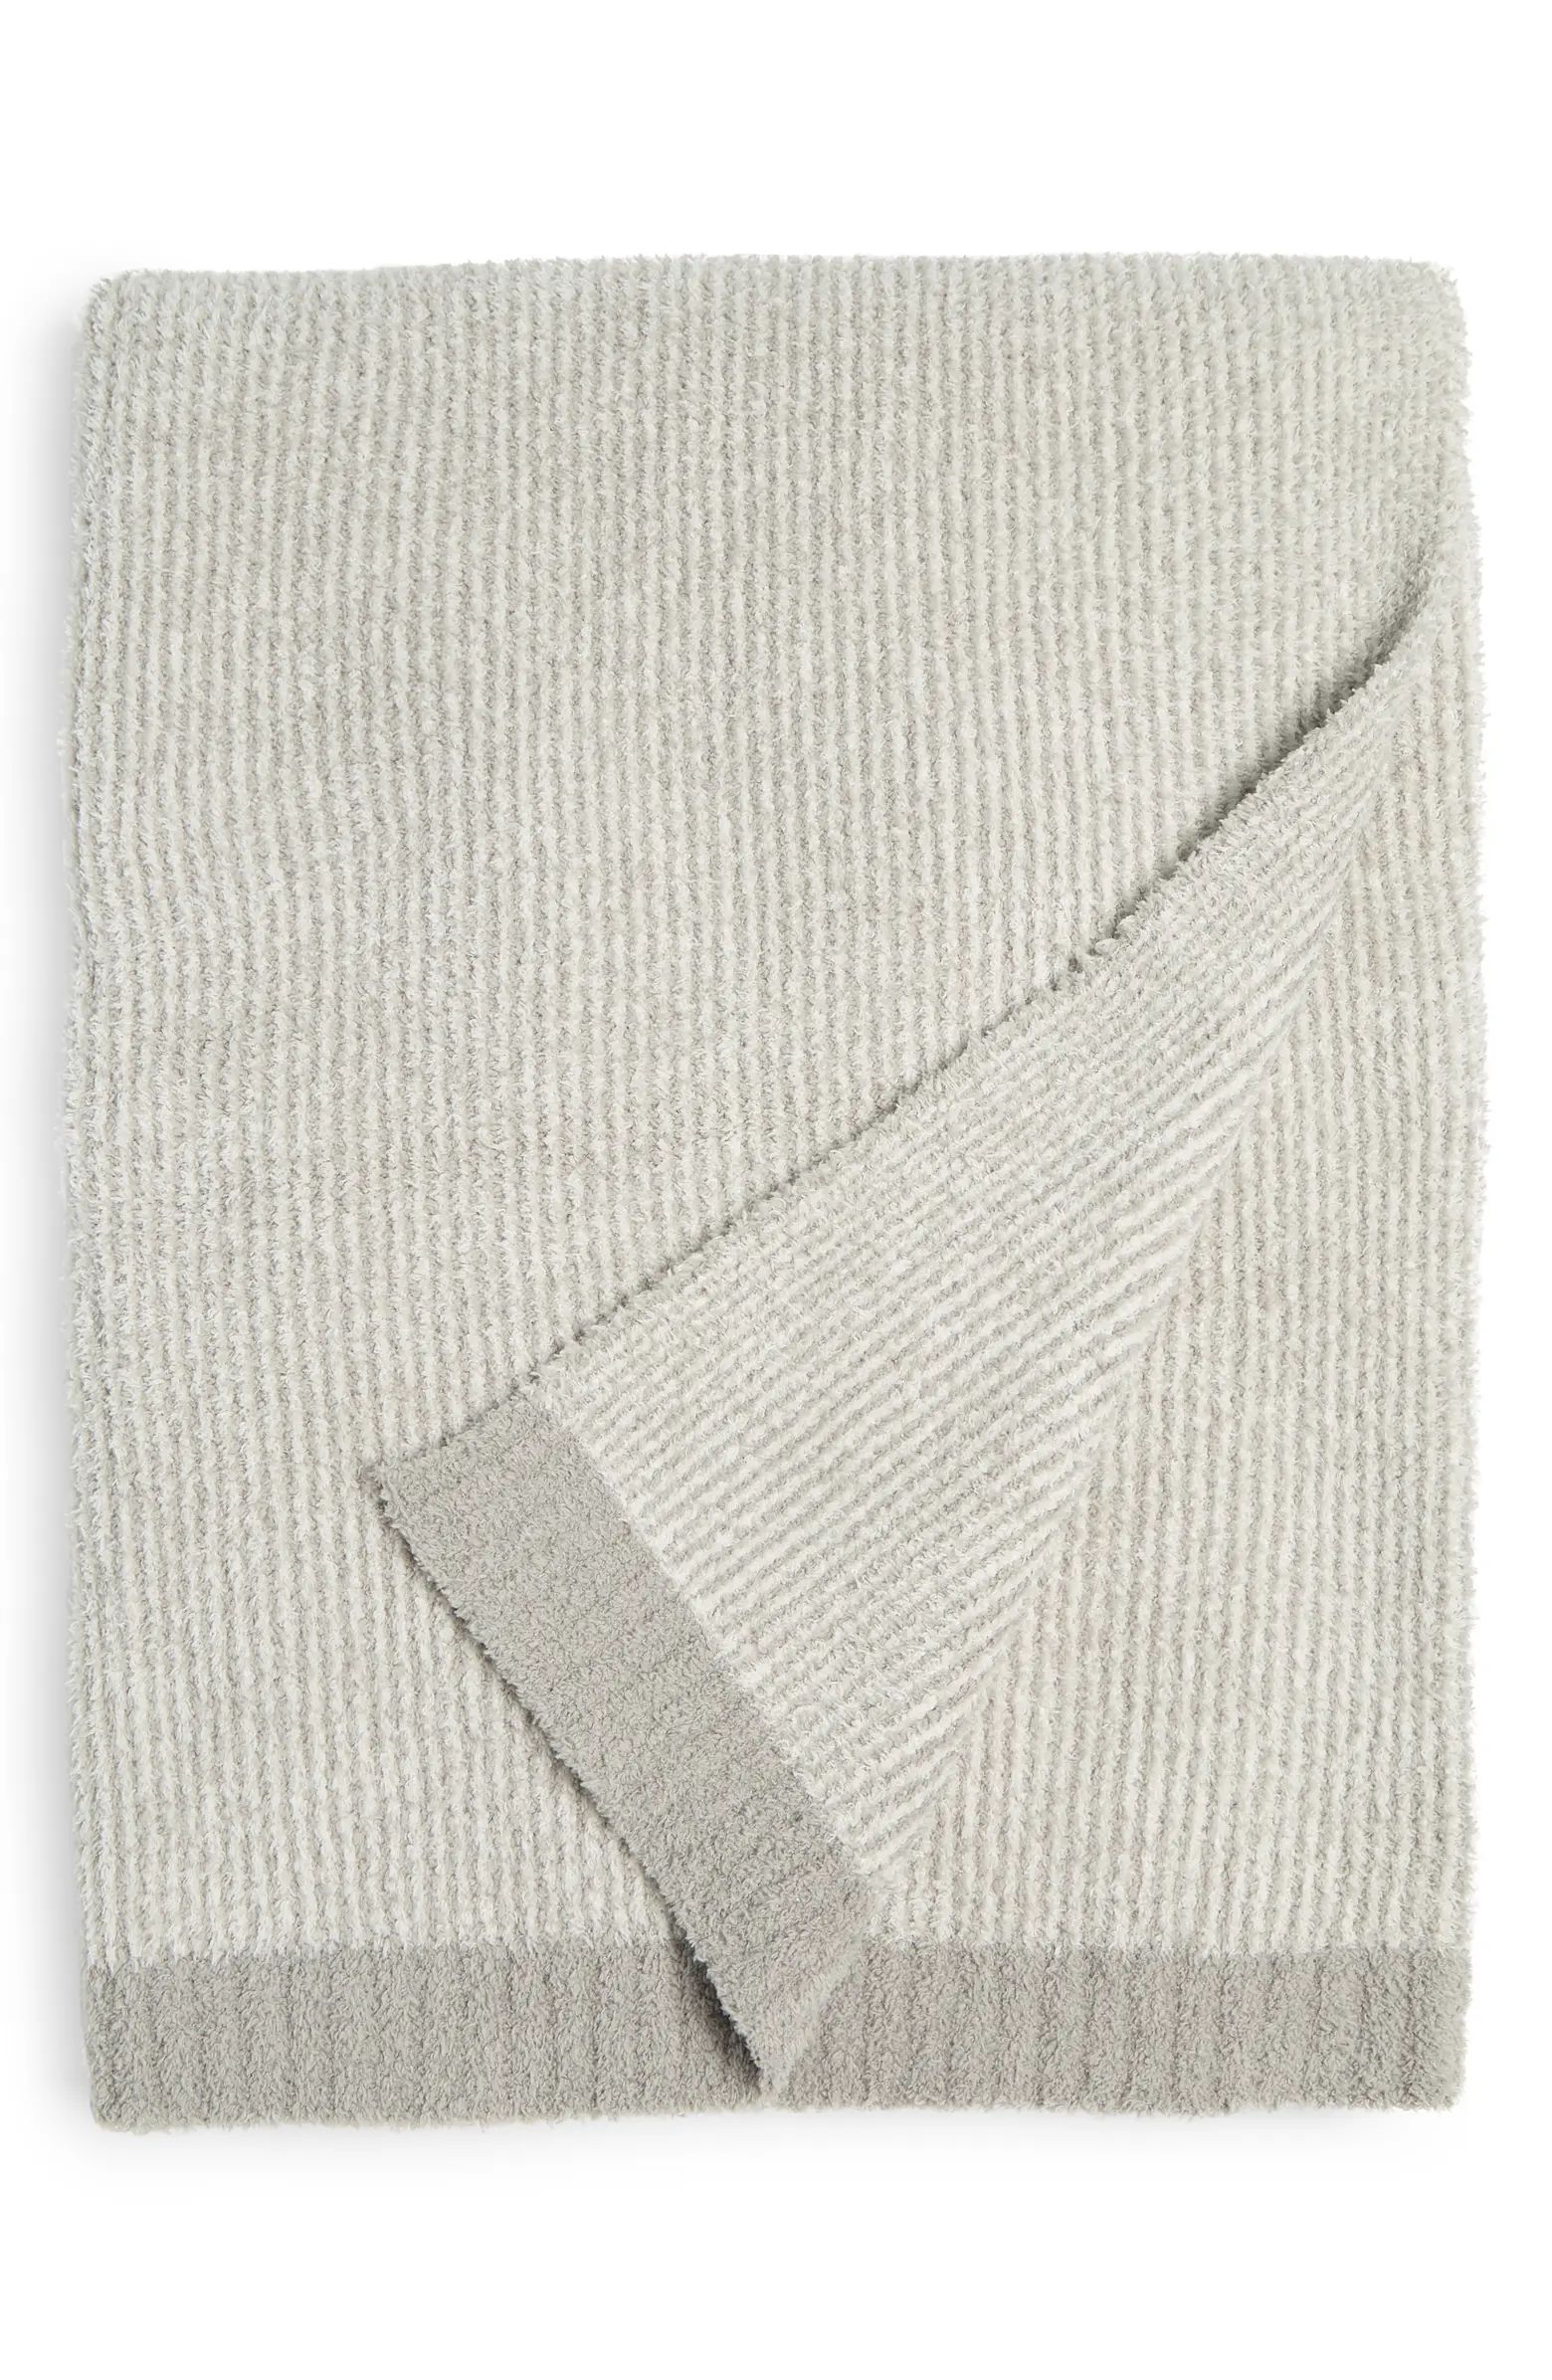 CozyChic™ Microstripe Blanket | Nordstrom Rack